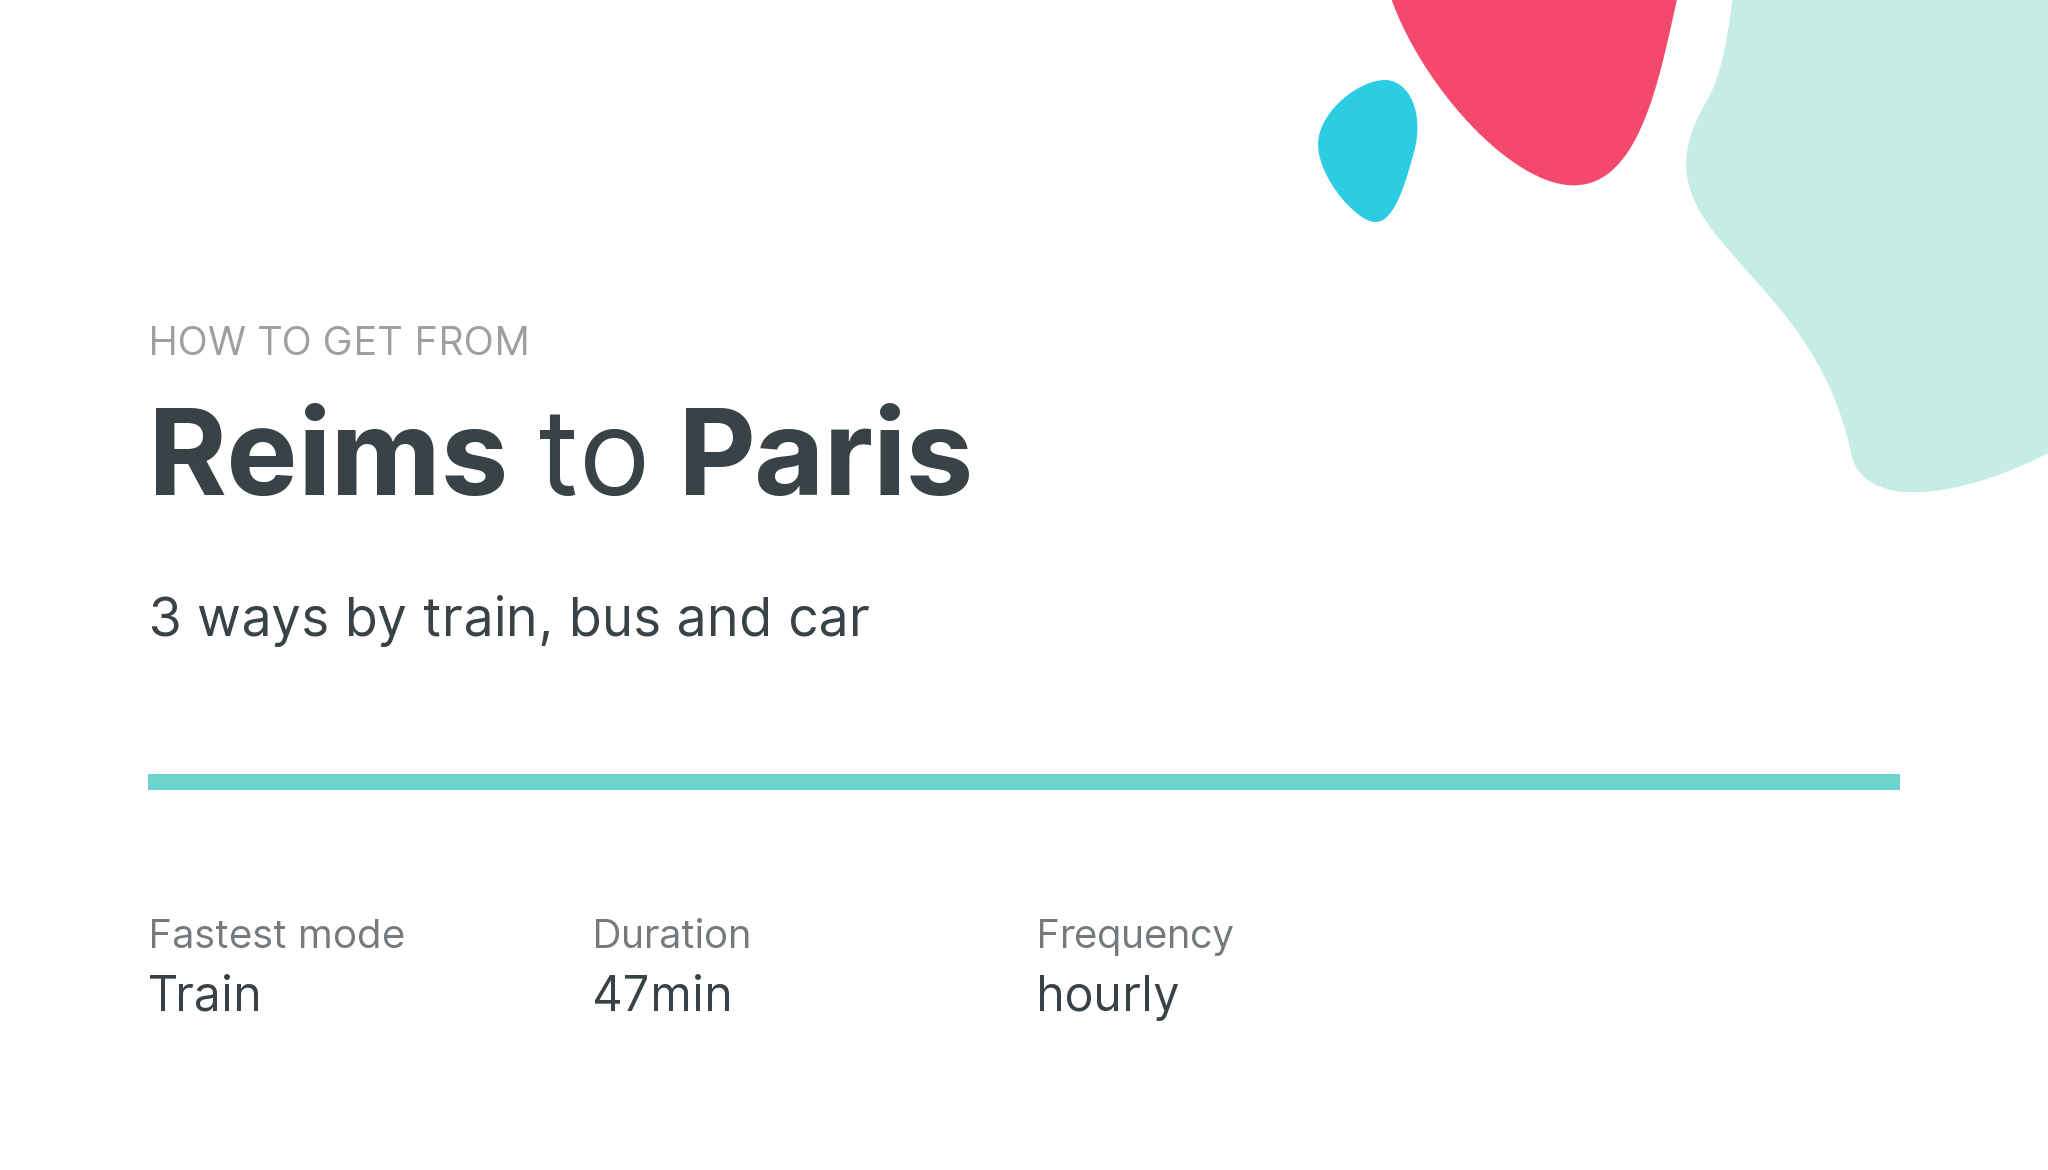 How do I get from Reims to Paris